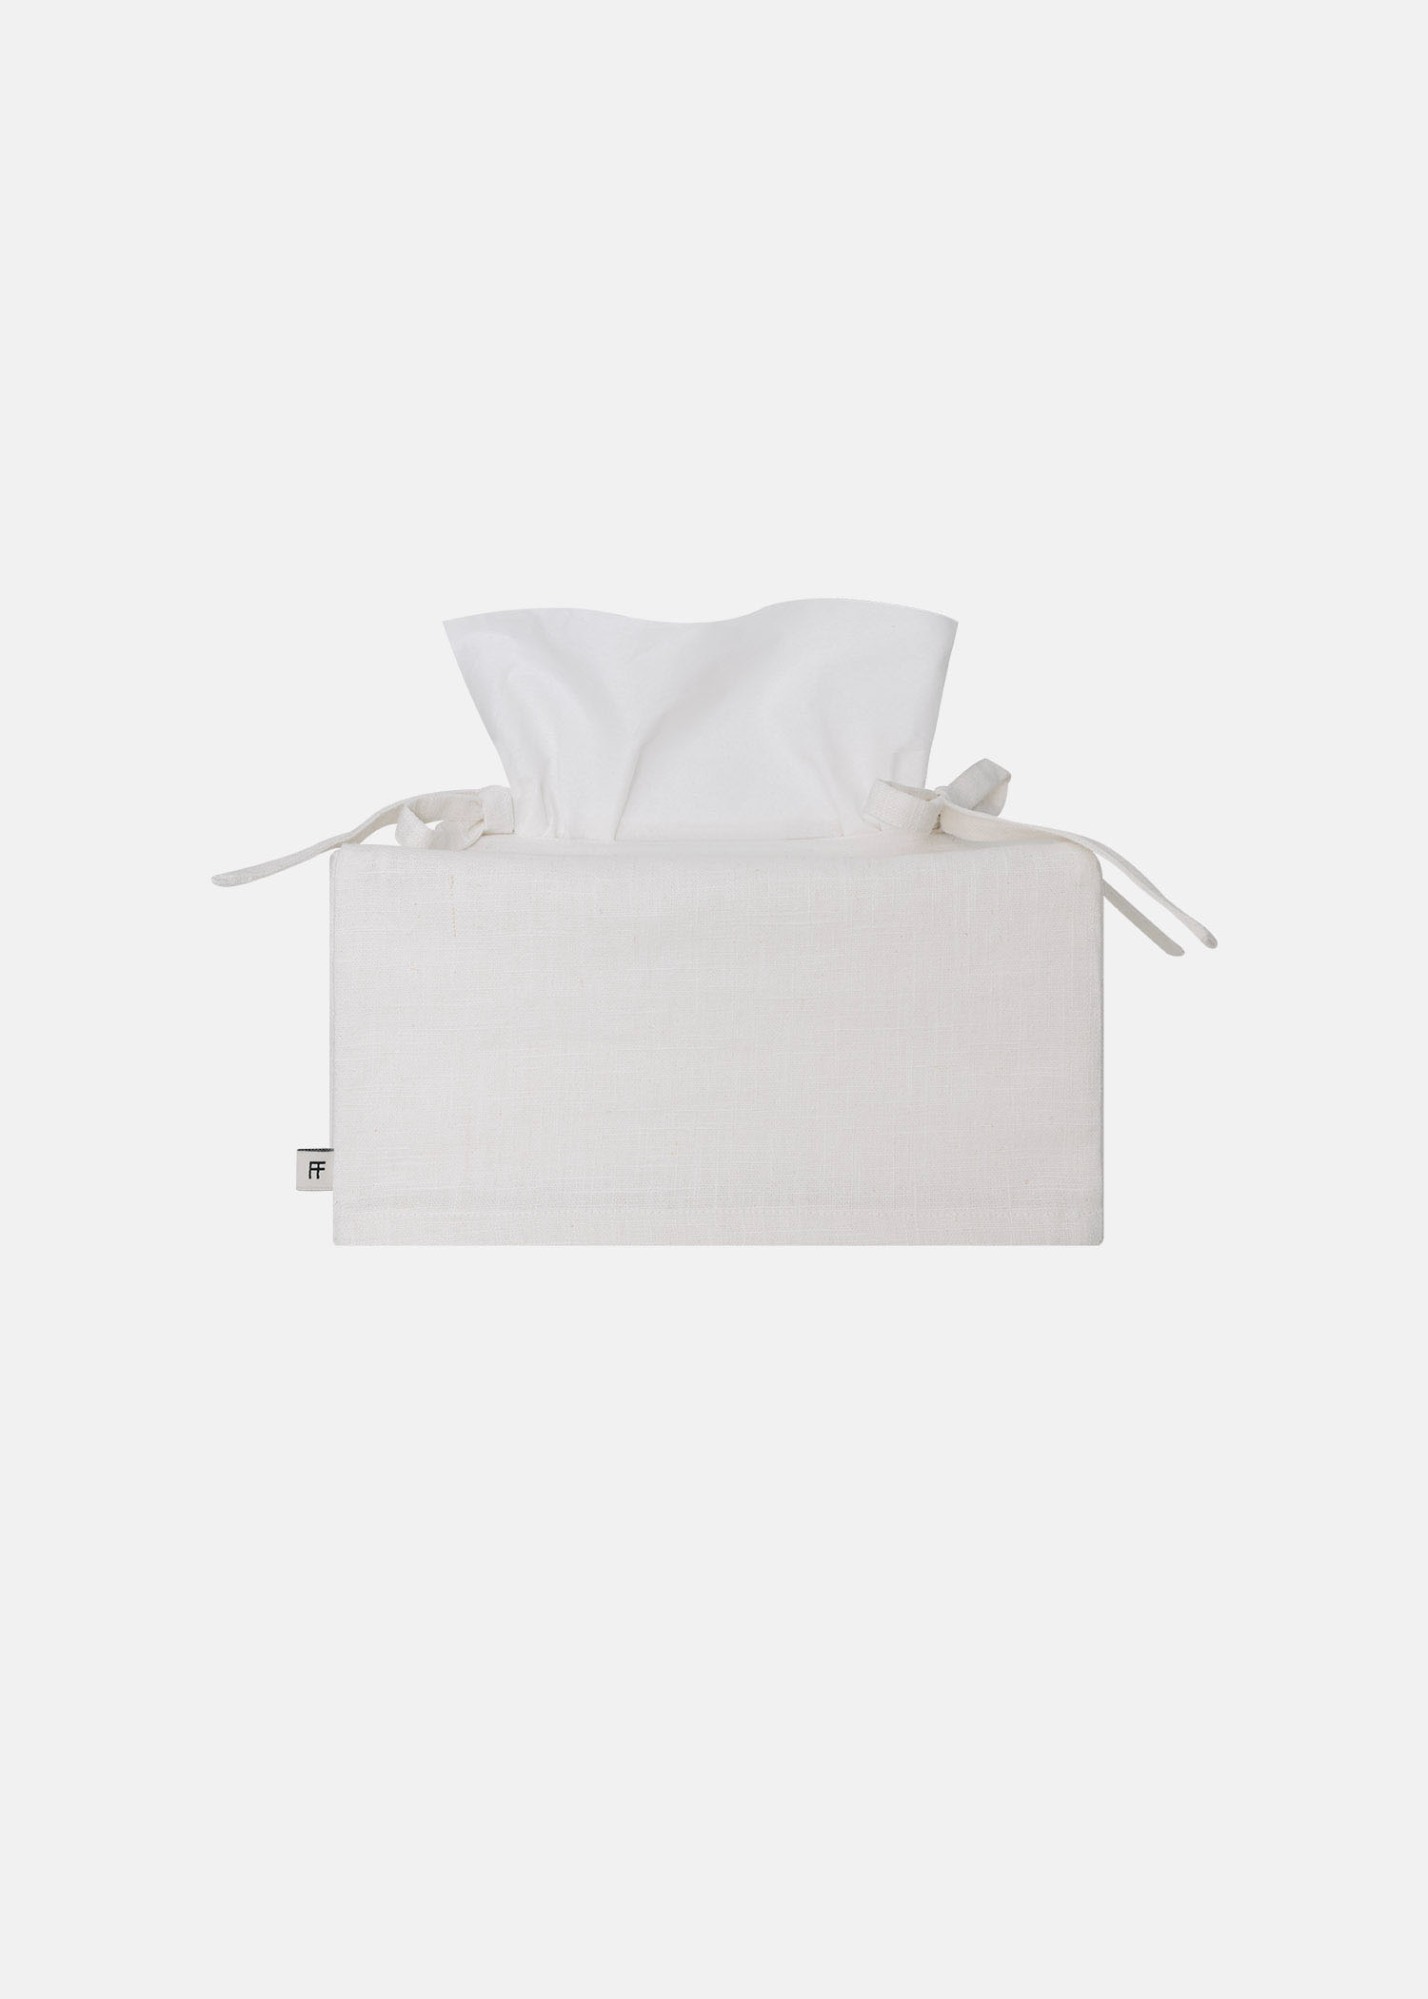 Linen Tissue Cover White